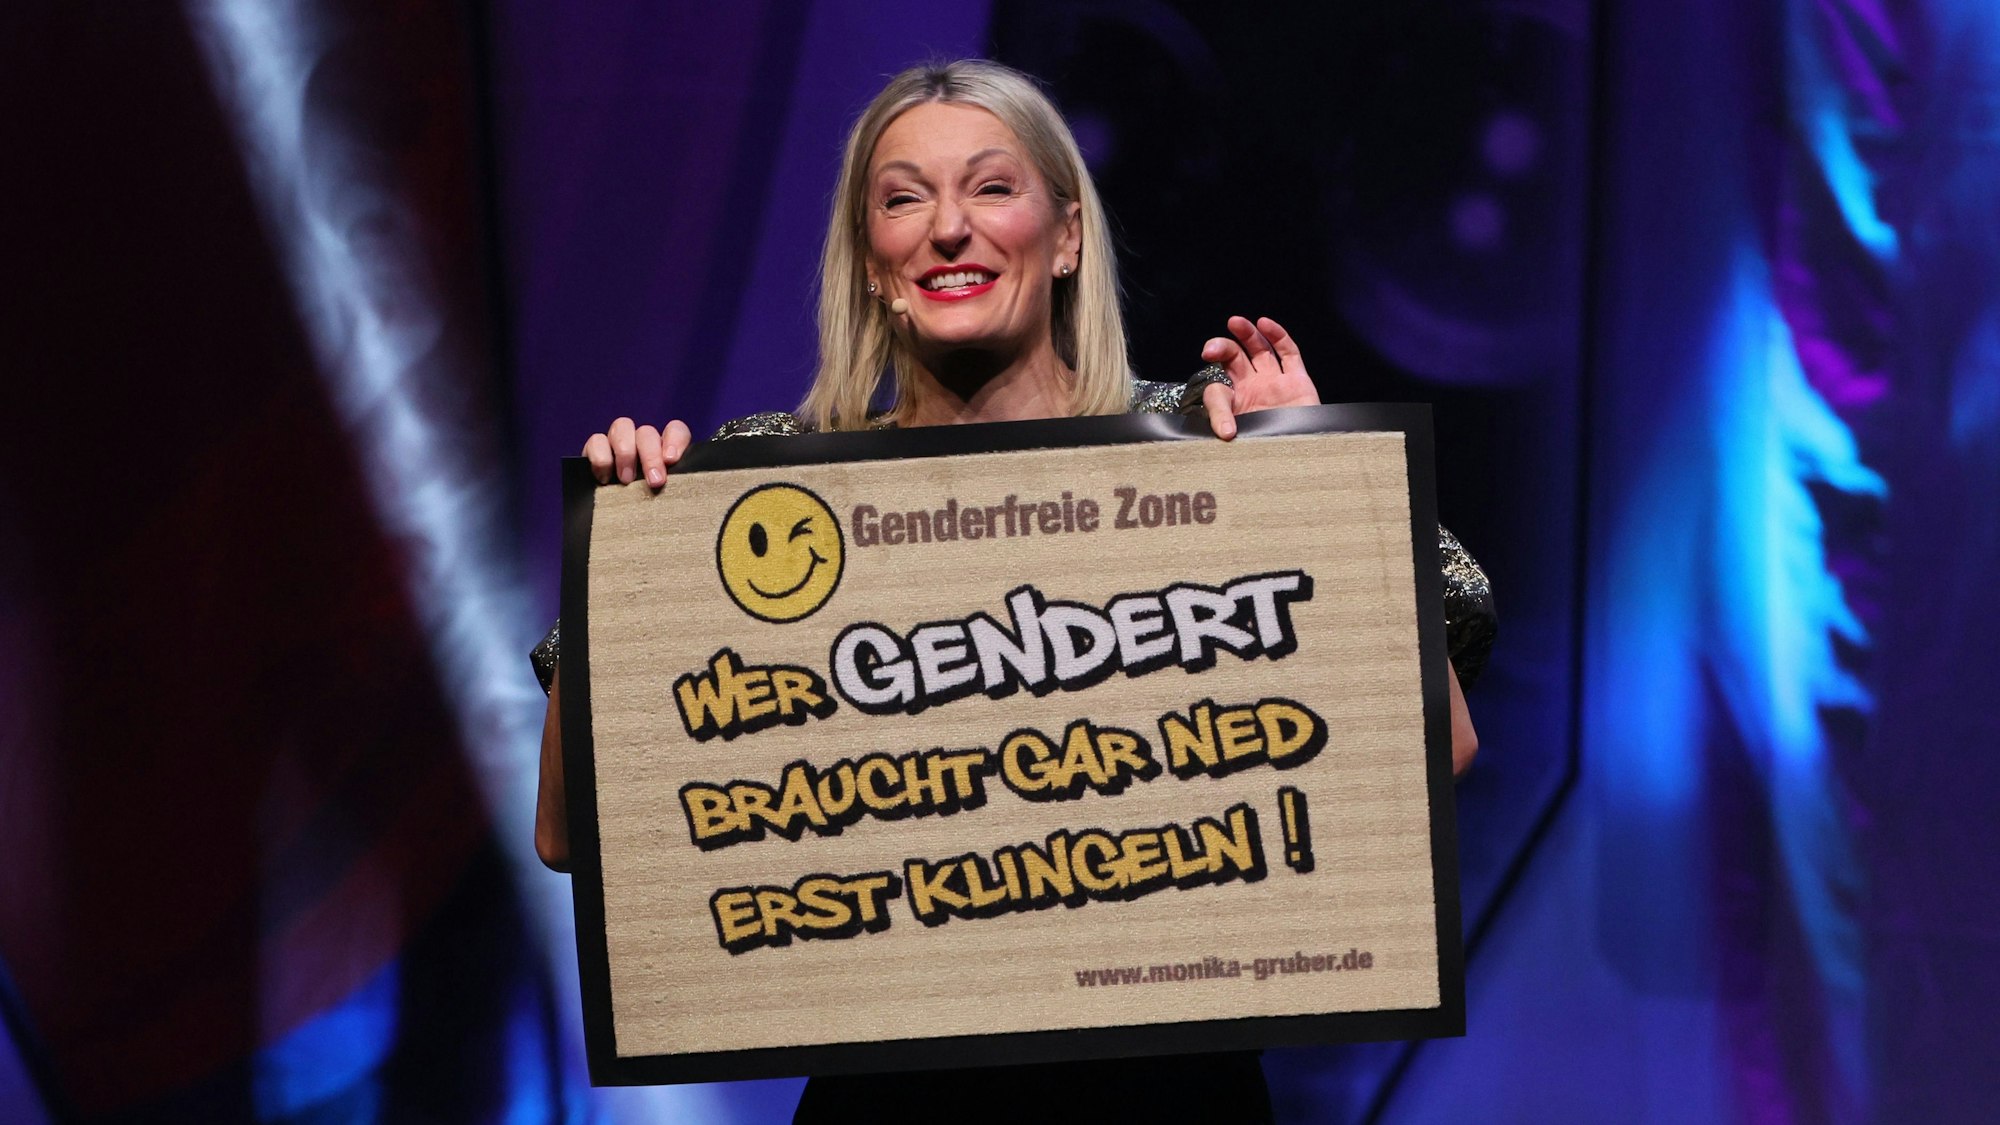 Monika Gruber steht in der Lanxess-Arena und zeigt eine Fußmatte, auf der steht: „Wer gendert, braucht gar ned erst klingeln!“